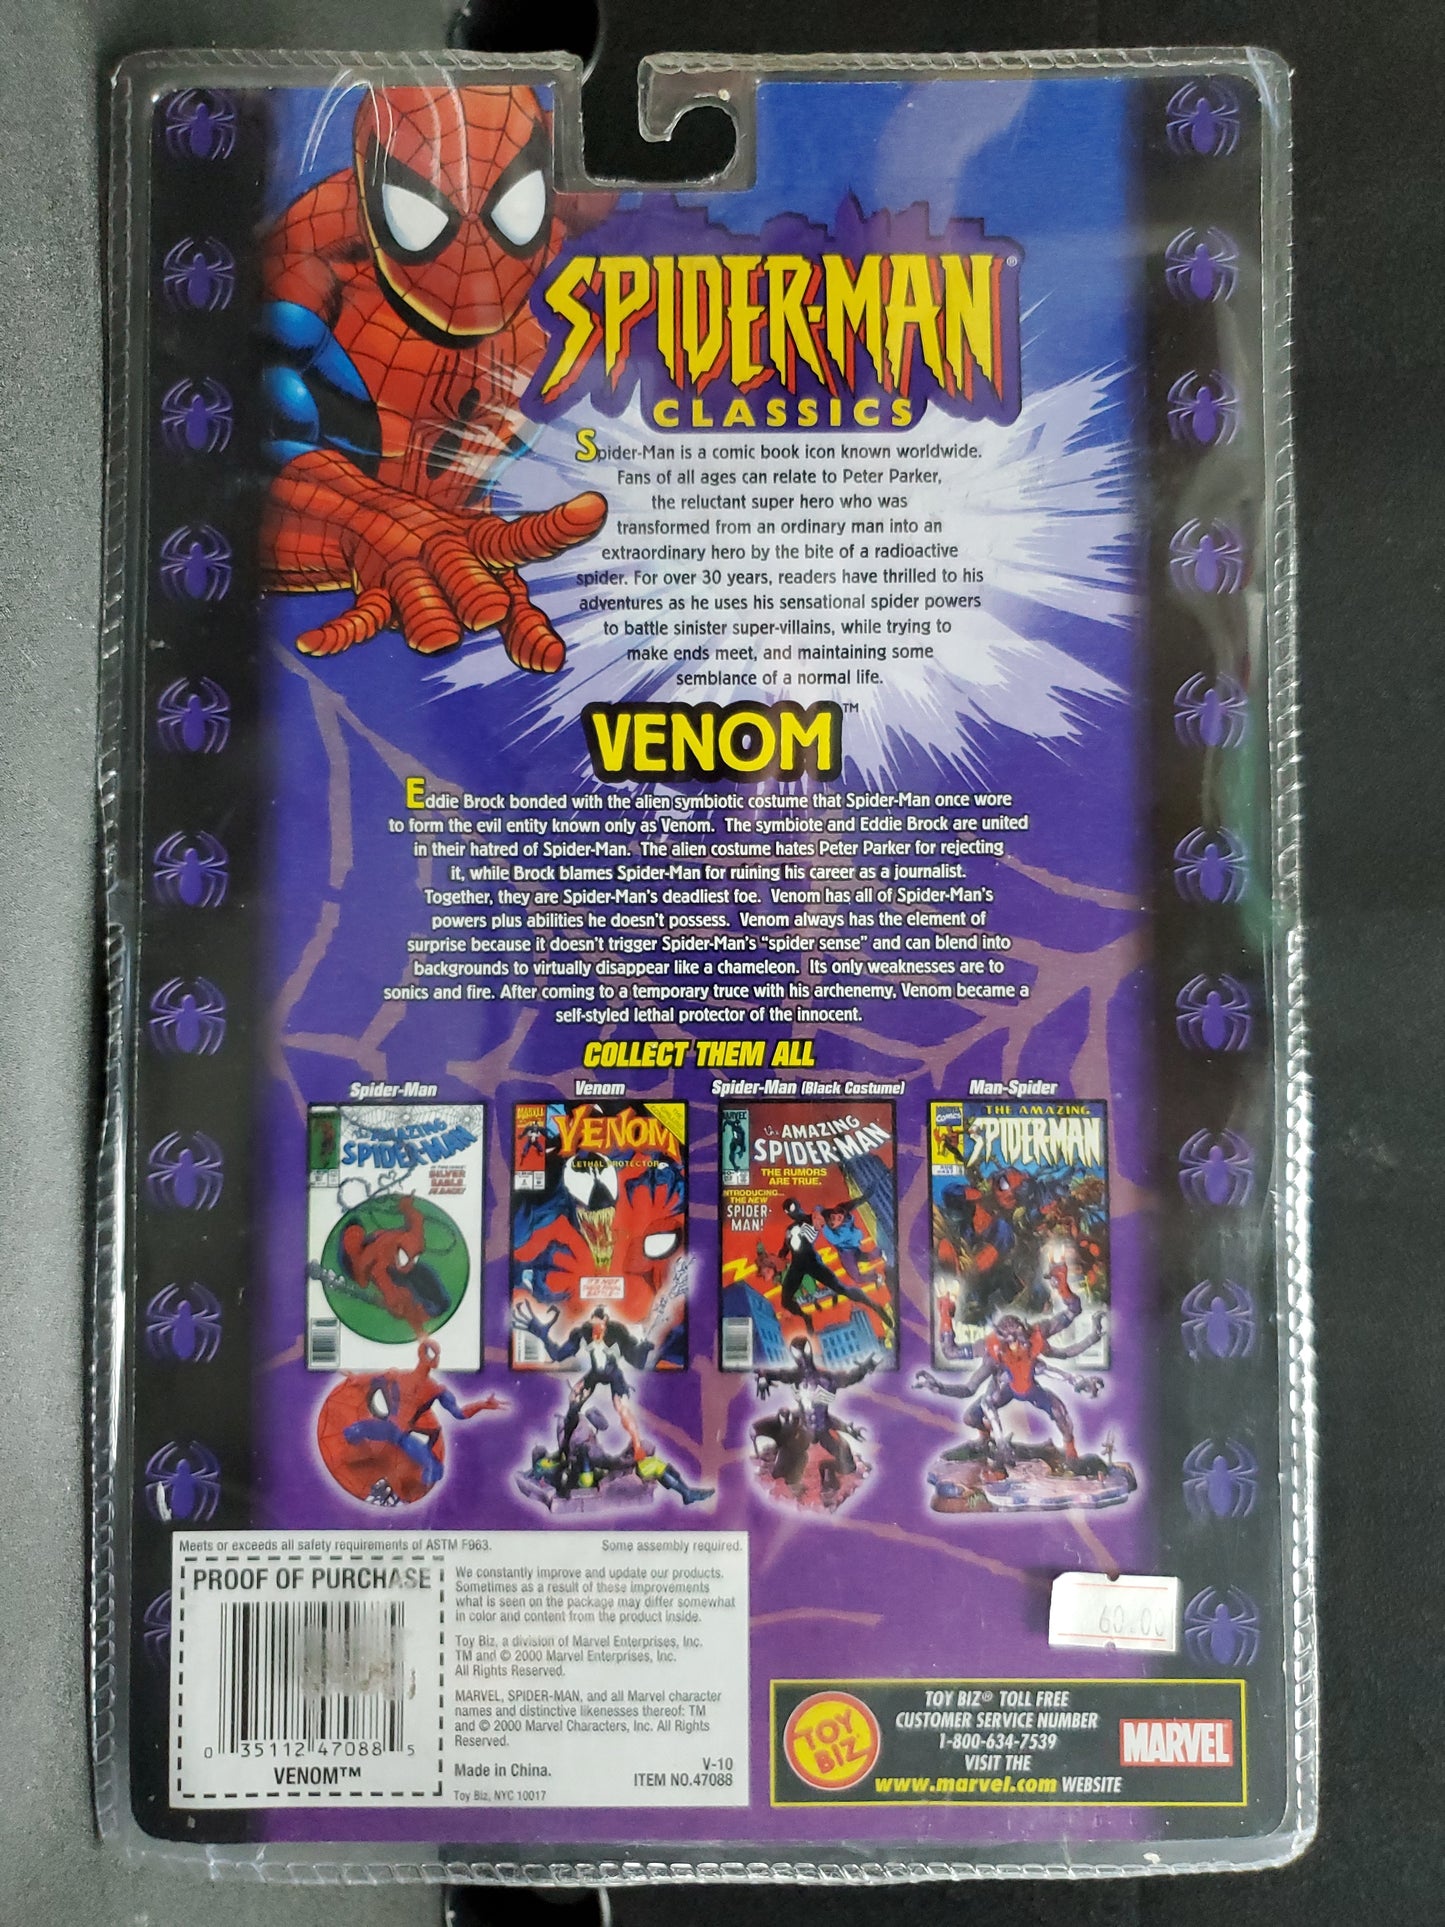 Marvel Venom Spider-Man Classics Series 6" Action Figure Bonus Comic Book